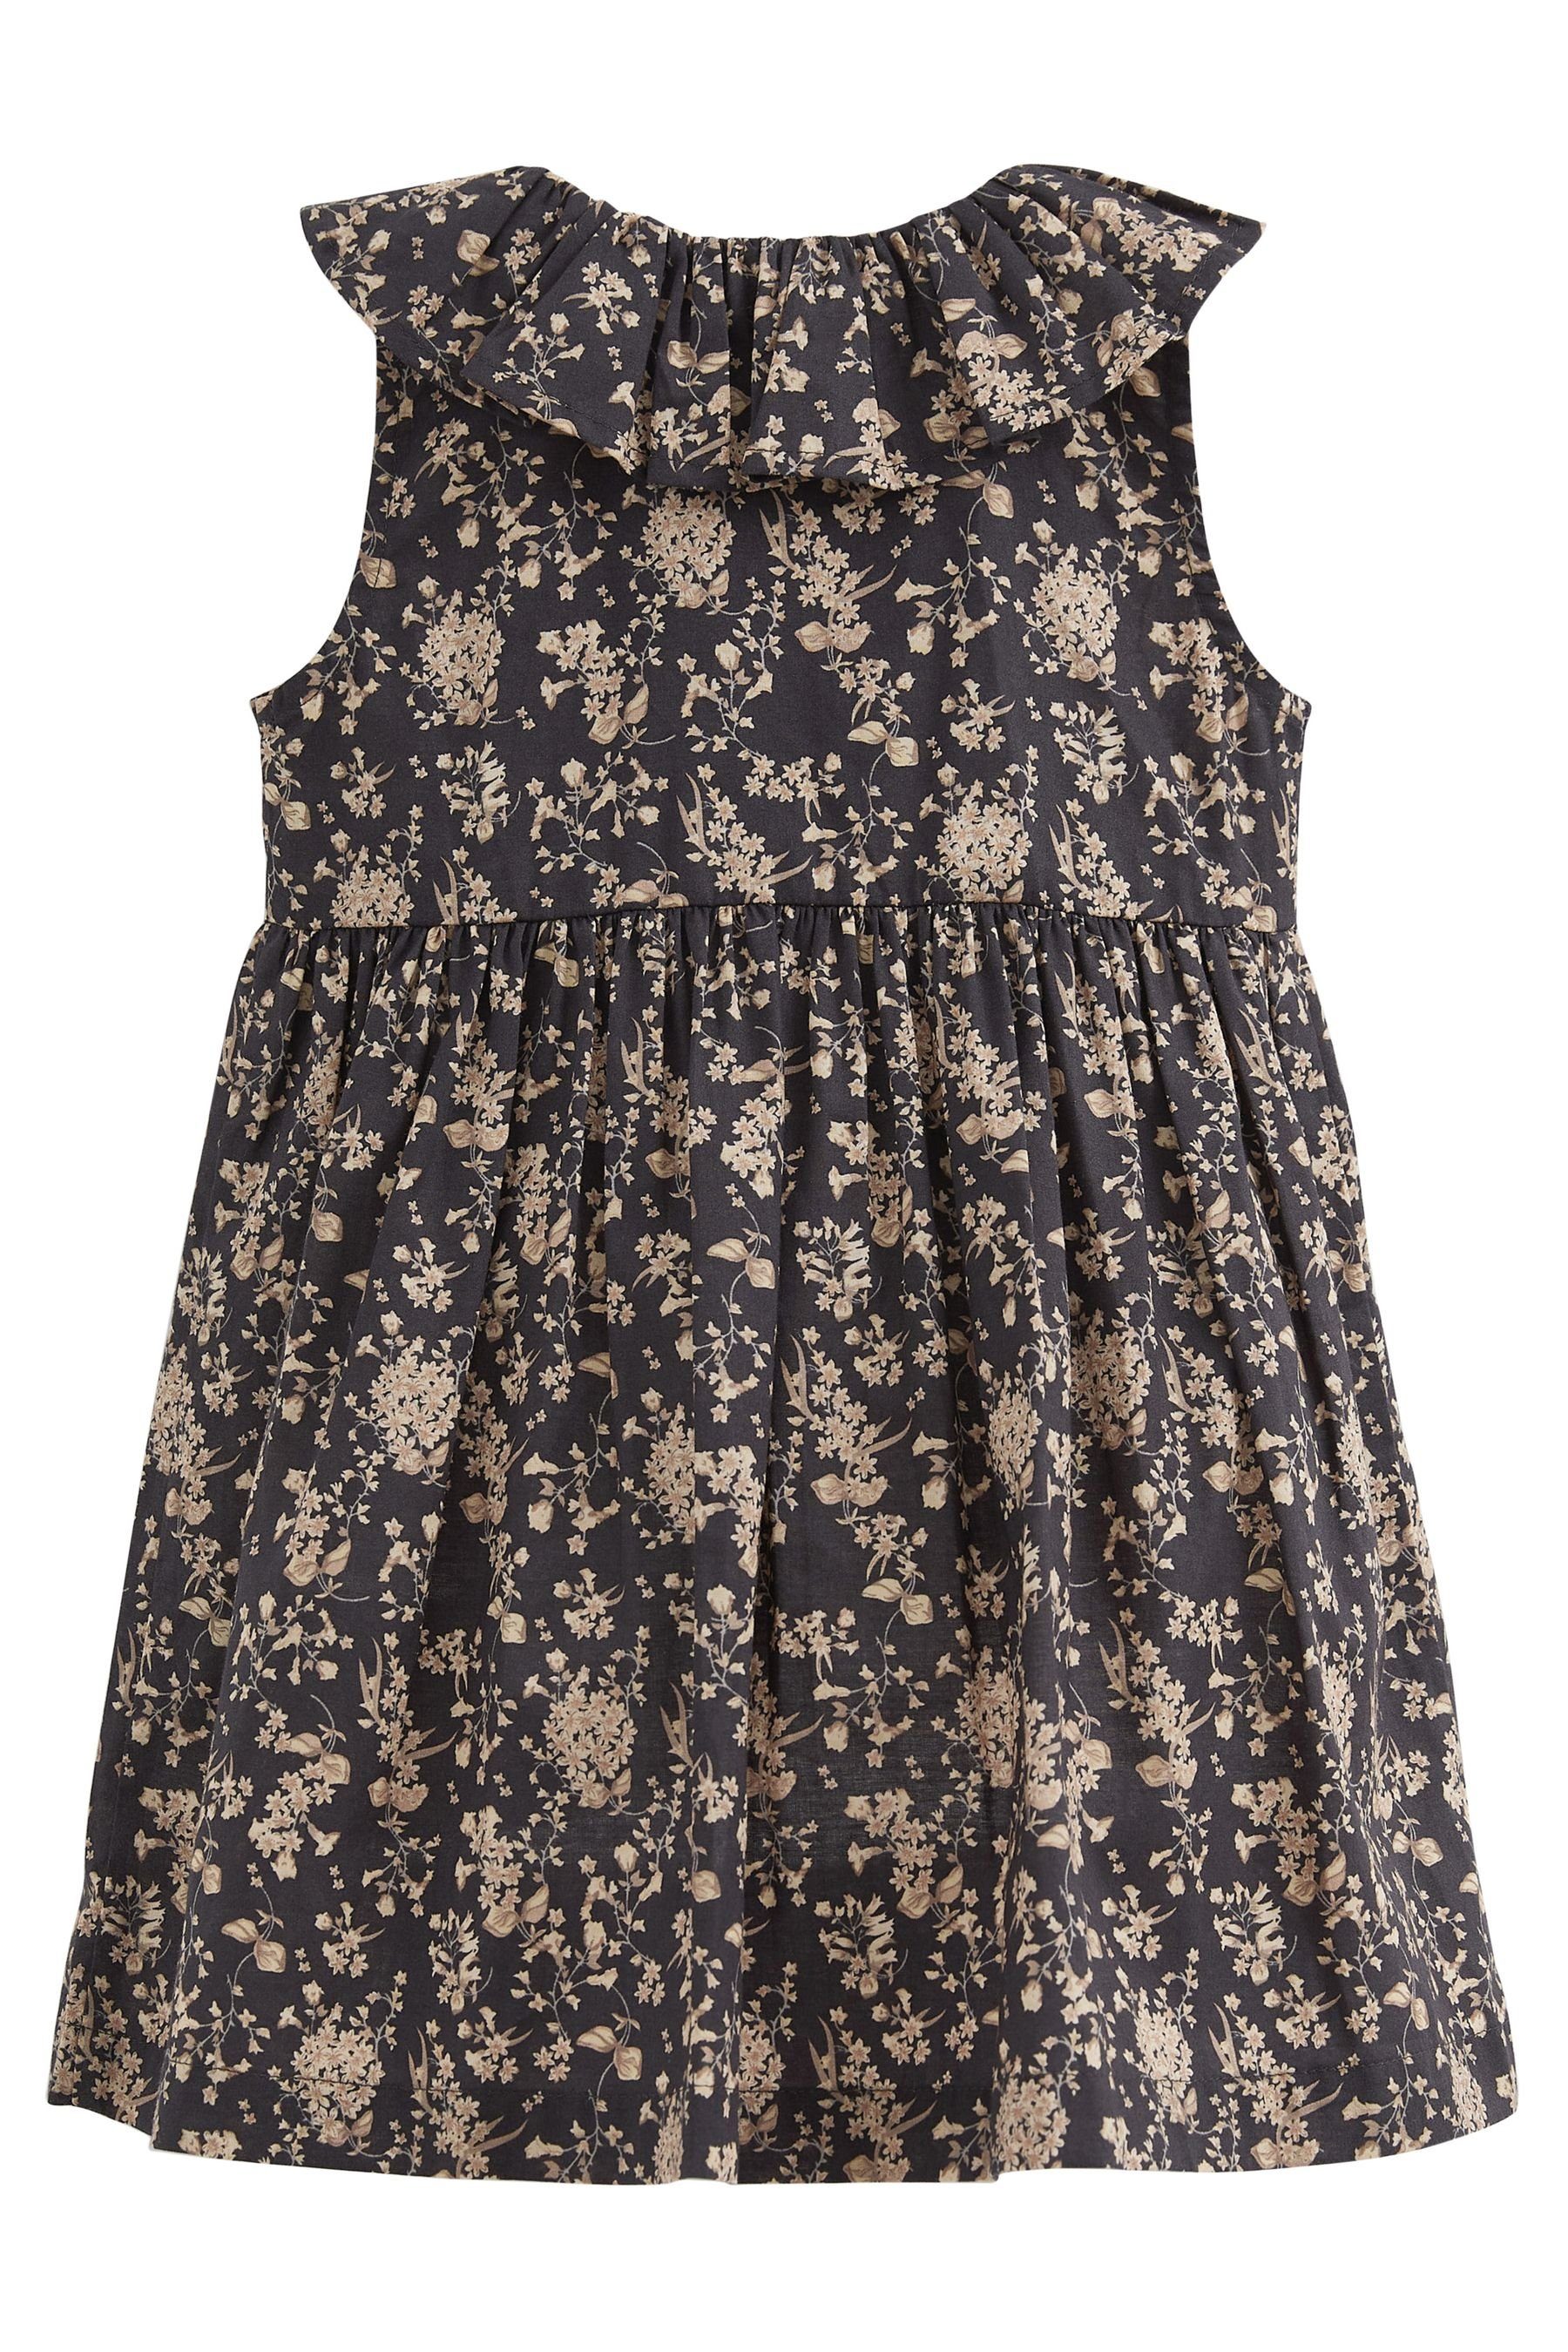 Kleid (1-tlg) Ditsy Black Rüschenkragen Sommerkleid mit Next